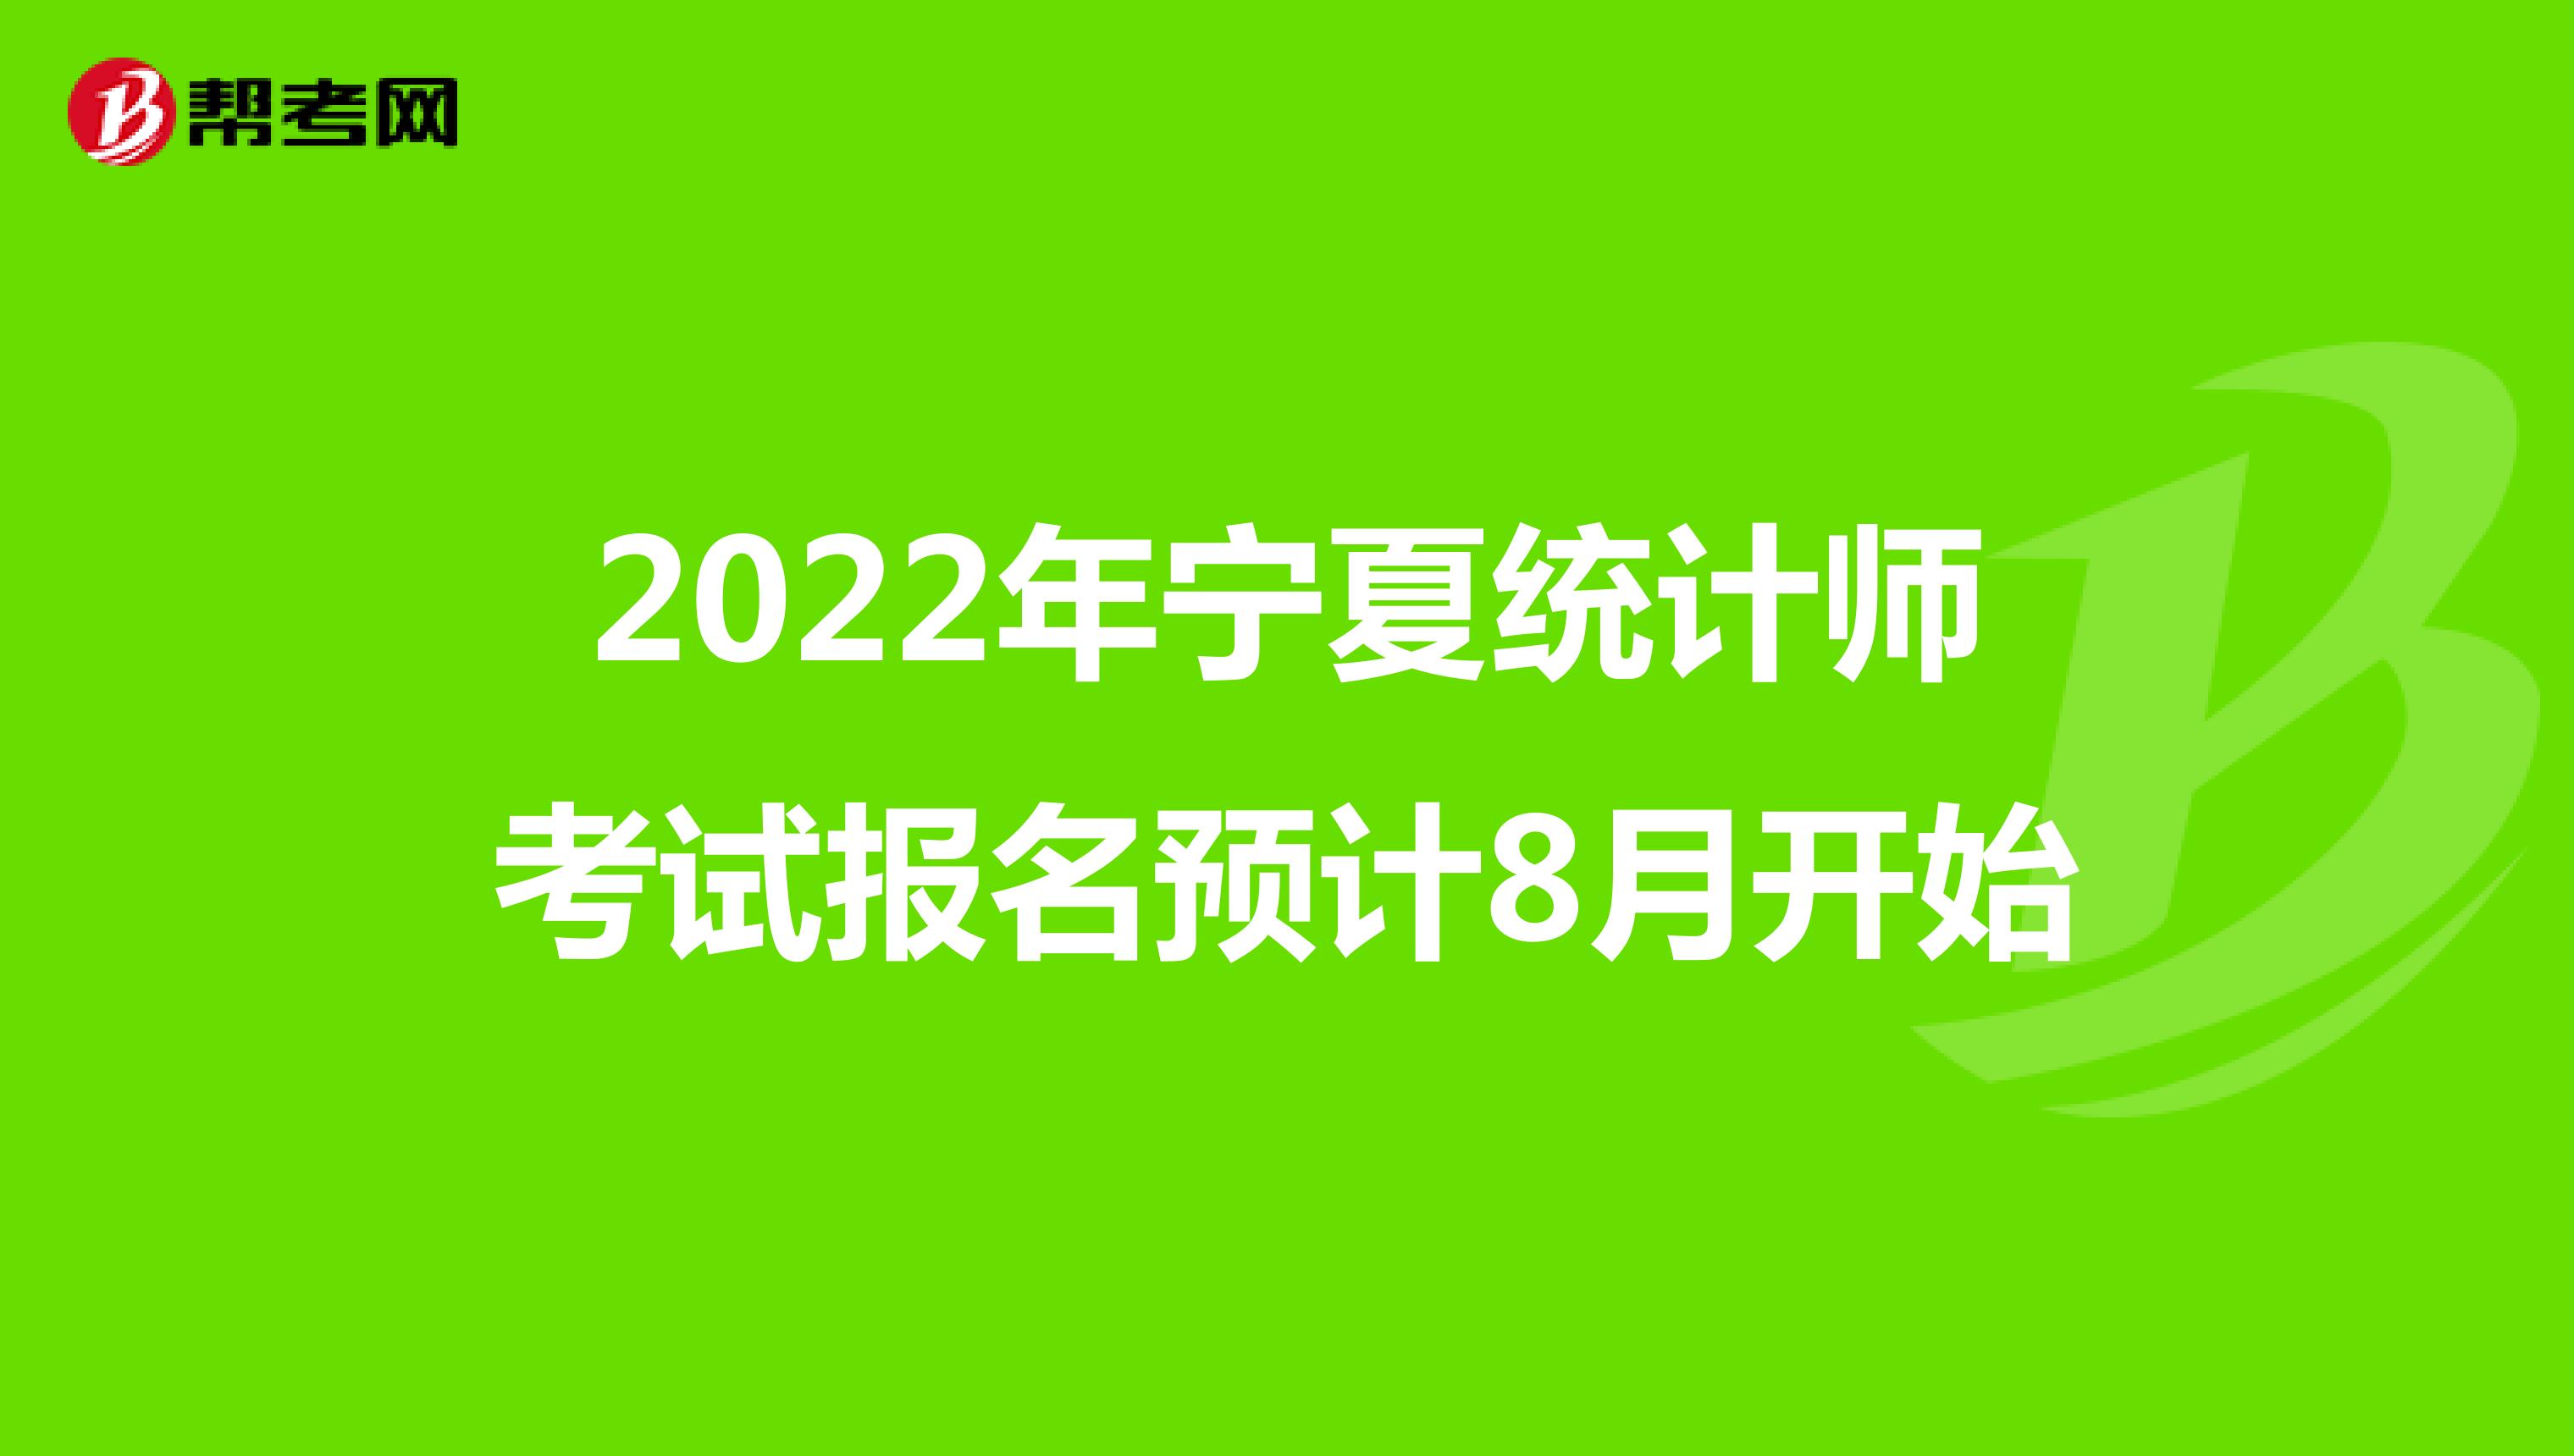 2022年宁夏统计师考试报名预计8月开始